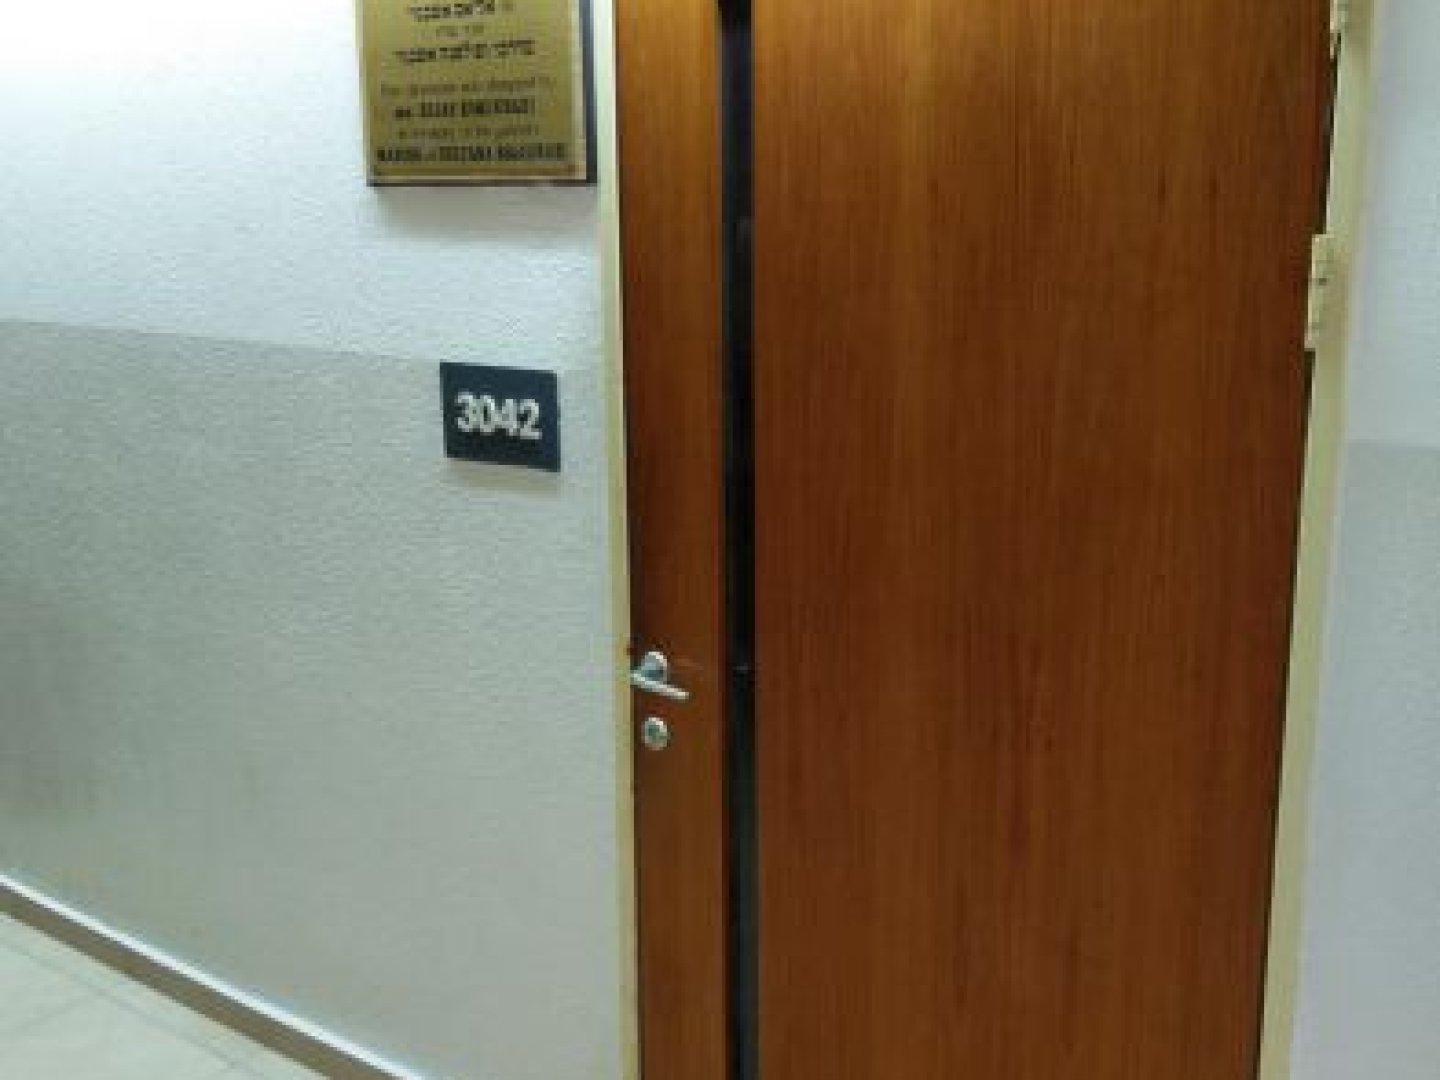 אוניברסיטת חיפה - בניין המדרגה - חדר 3042 - תמונה 1